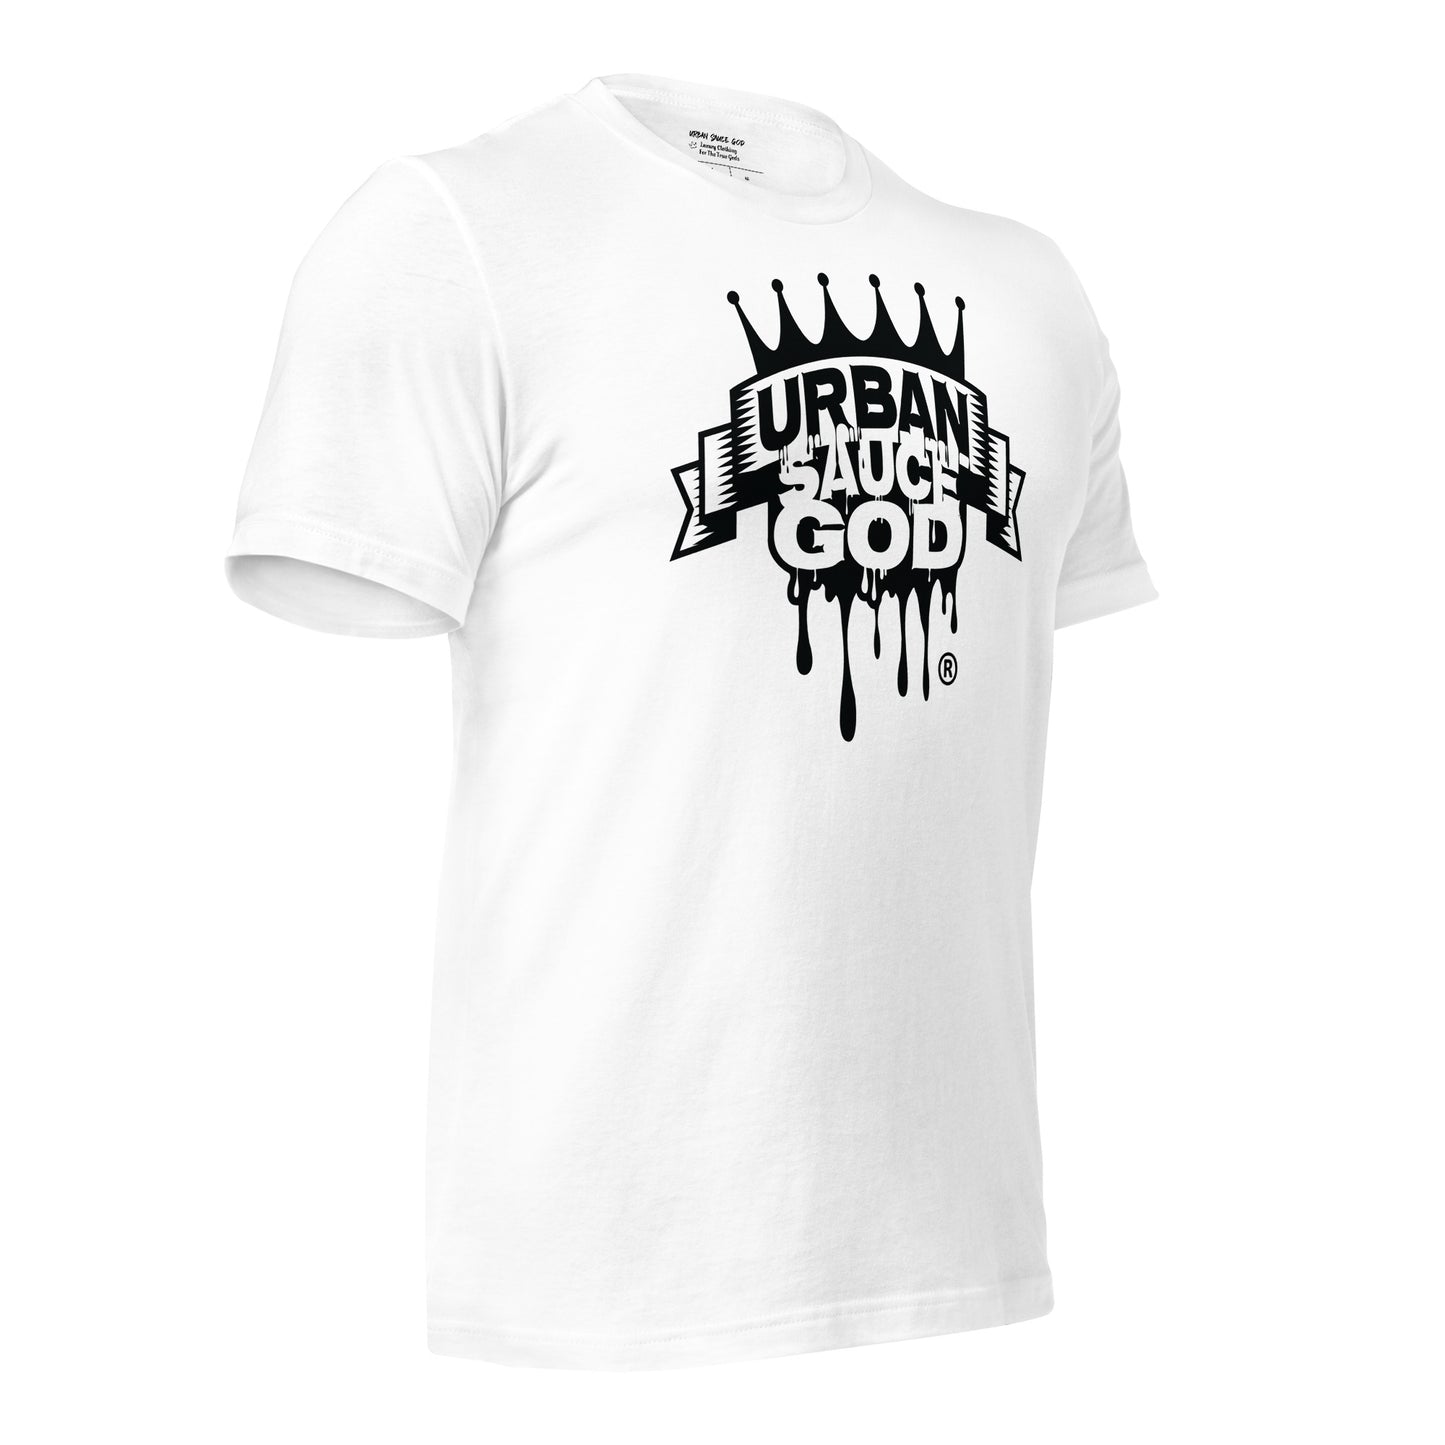 Sauce God Black Logo T-shirt